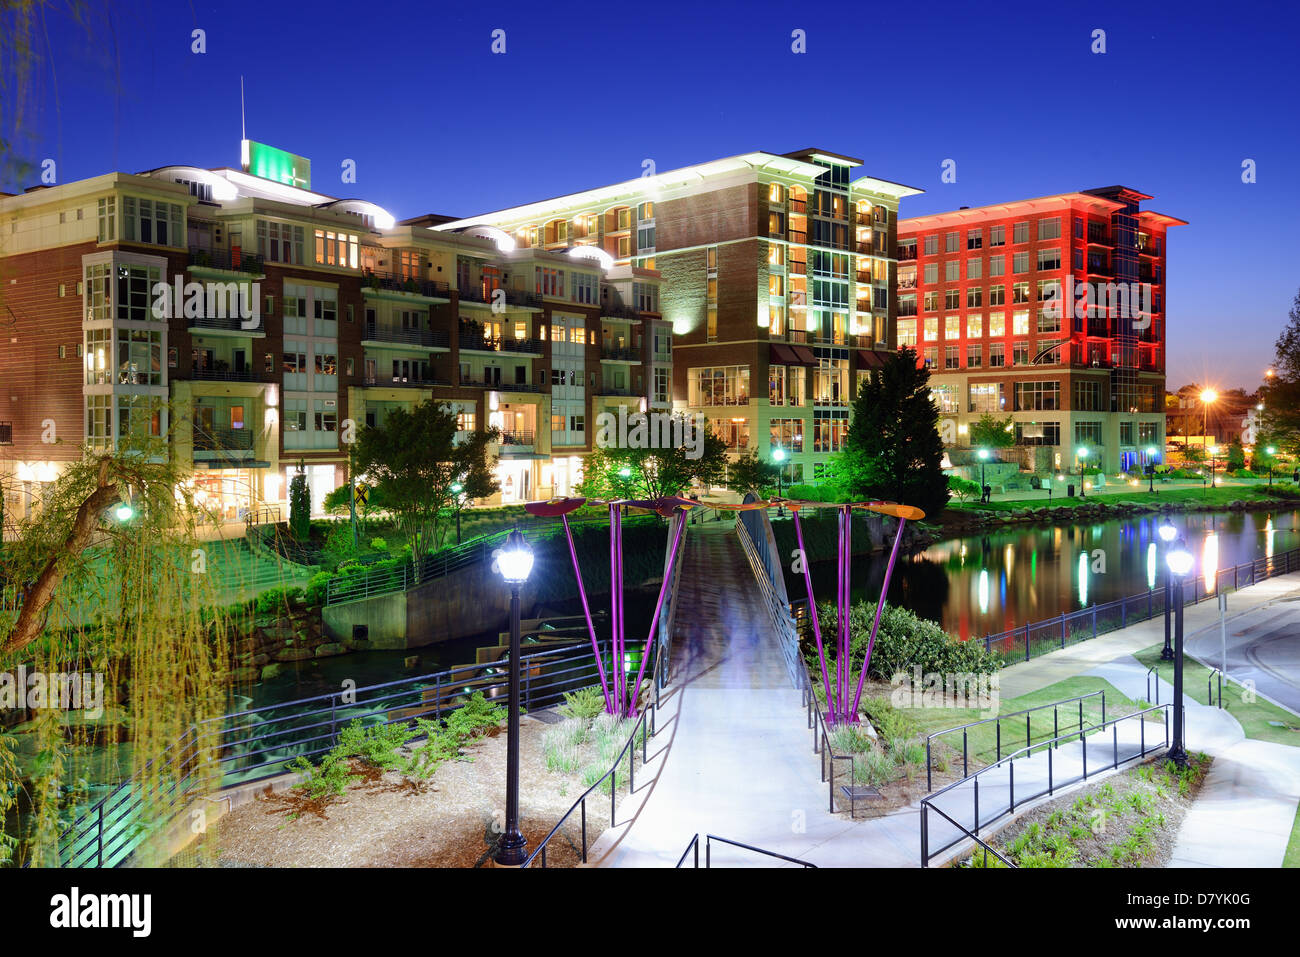 Greenville, South Carolina at Falls Park in downtown at night. Stock Photo